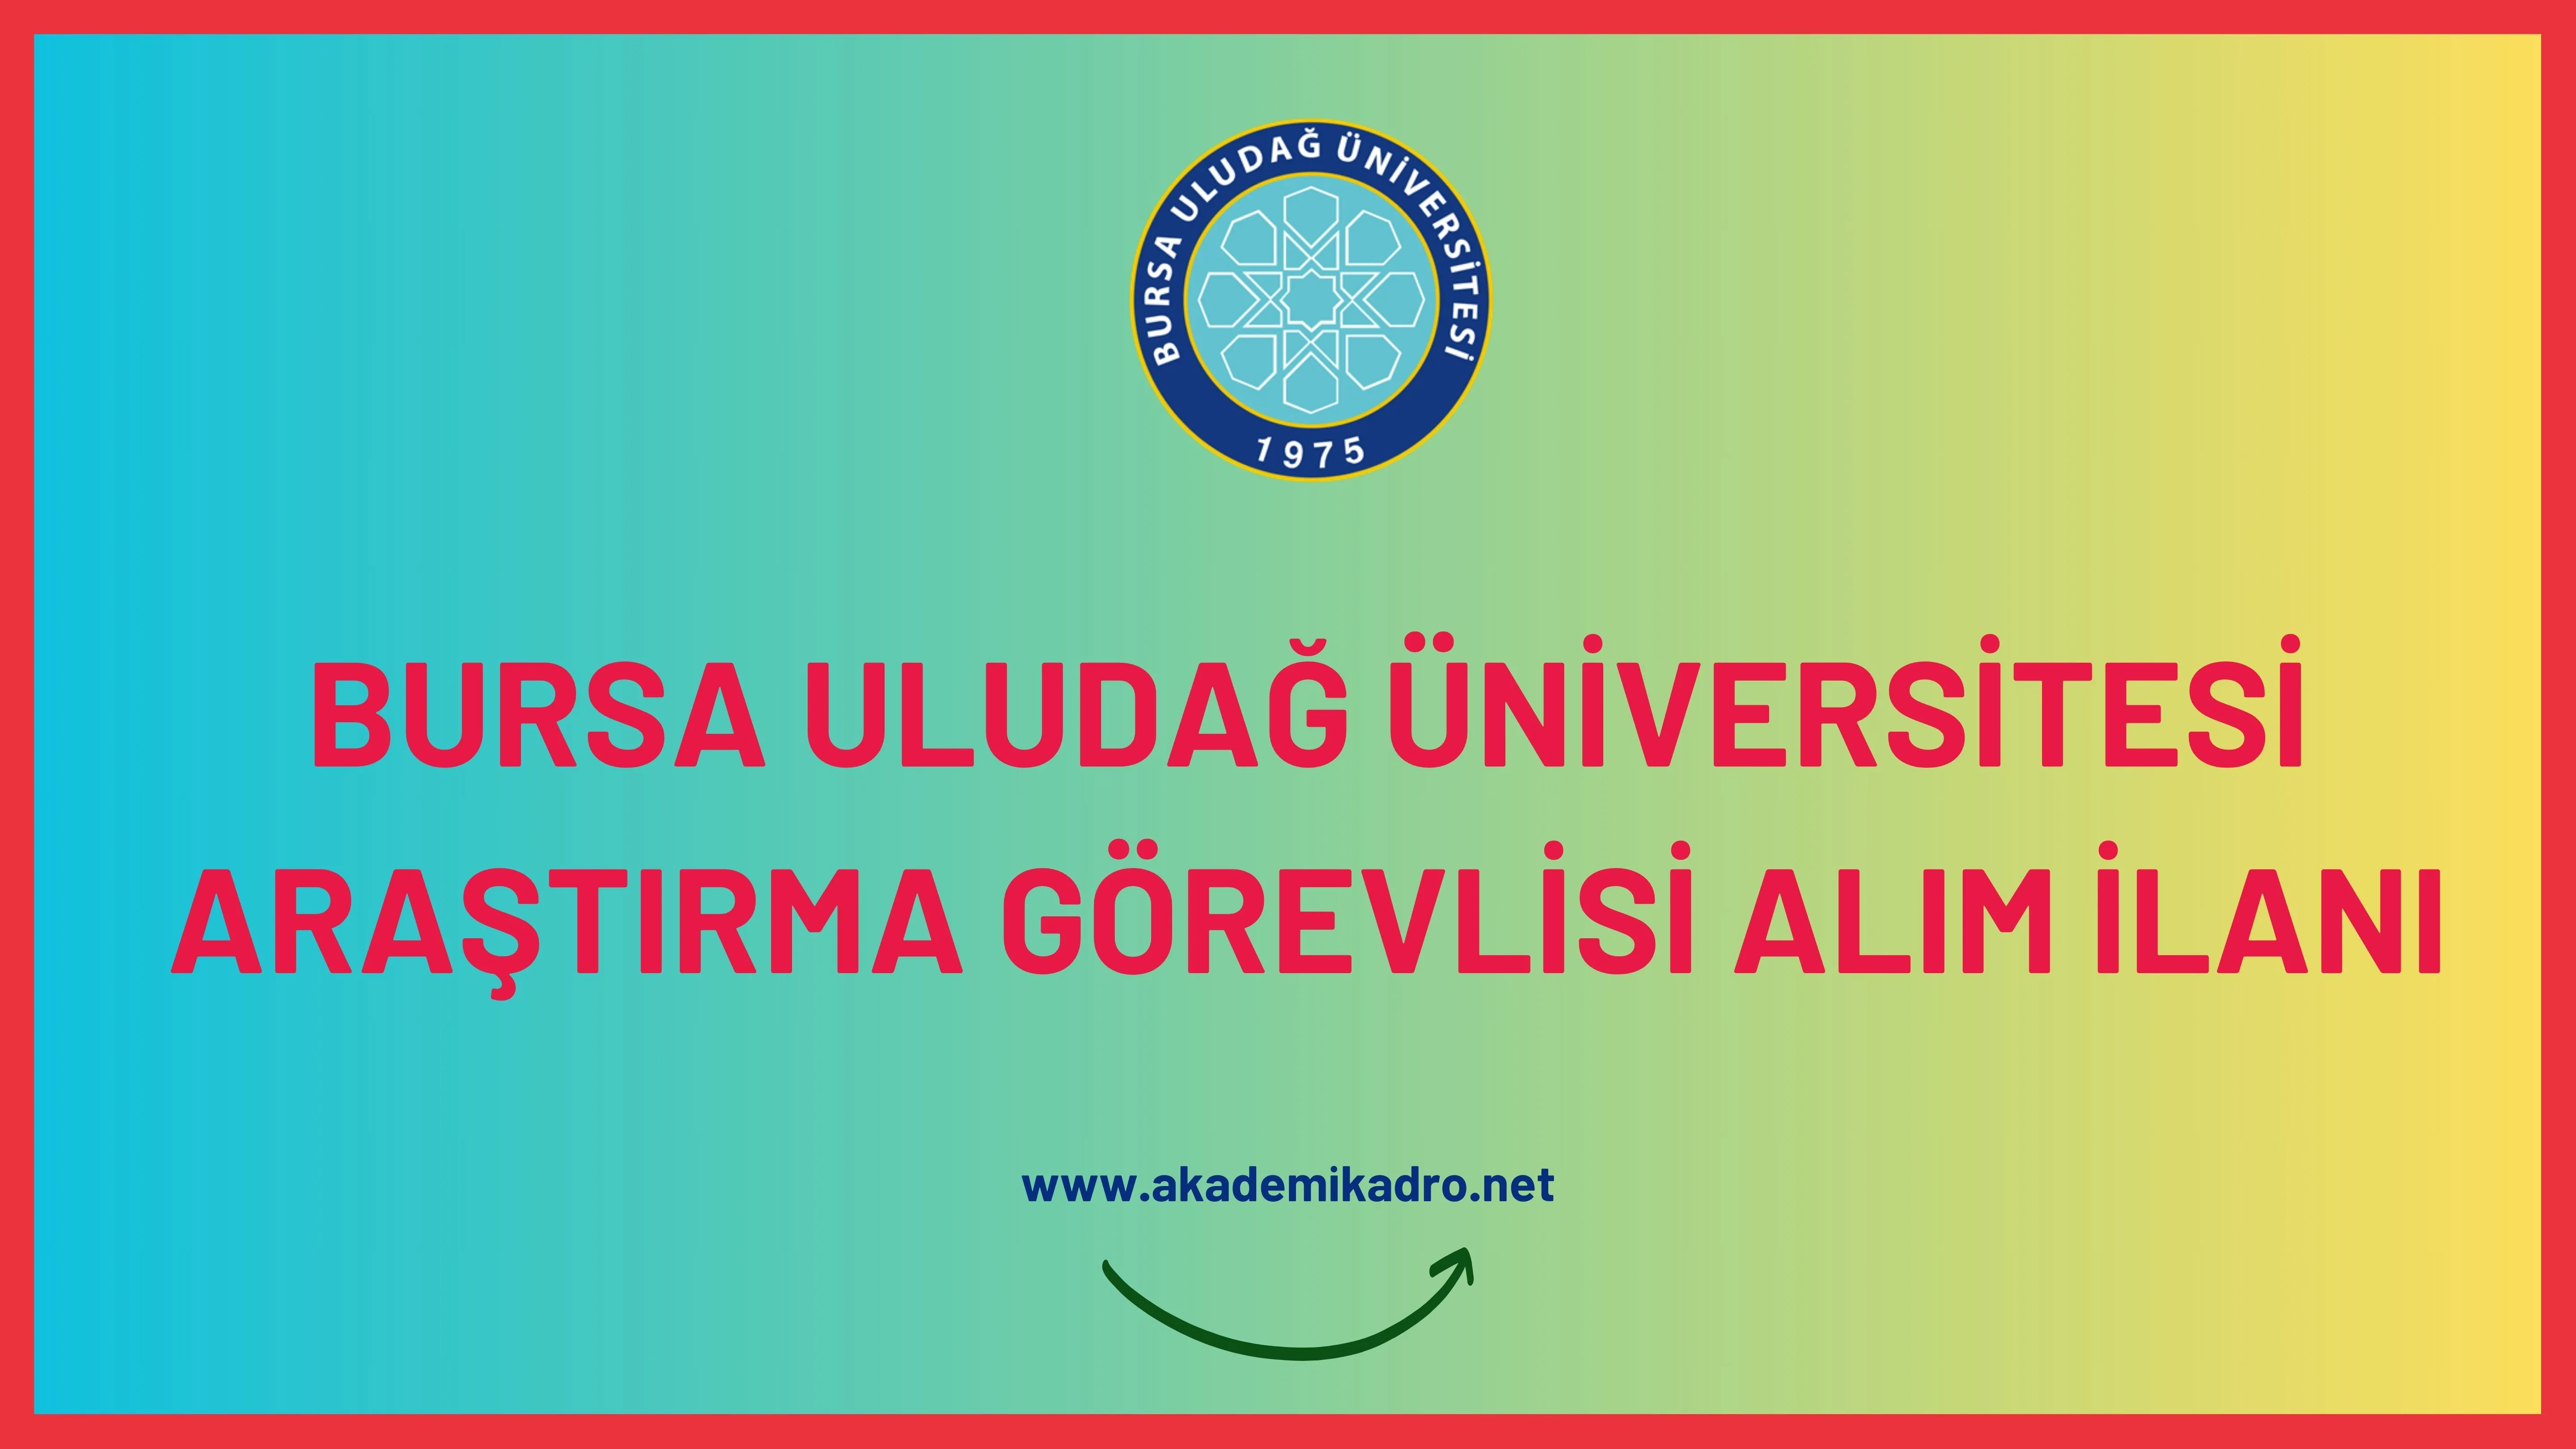 Bursa Uludağ Üniversitesi birçok alandan 35 Araştırma görevlisi alacak.